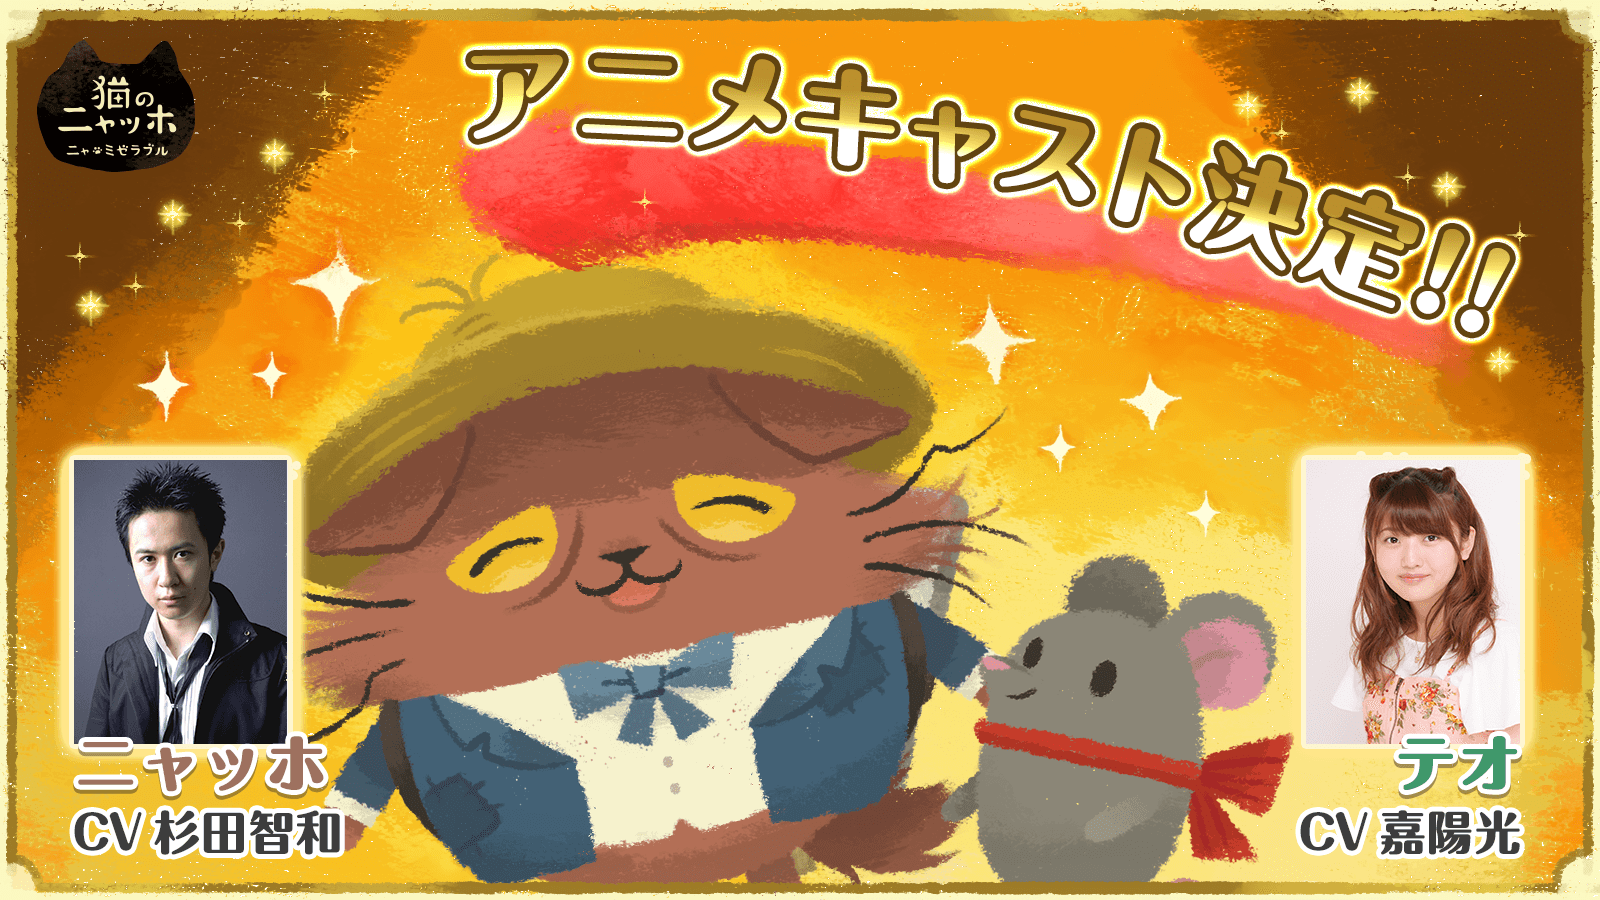 猫のニャッホ Tvアニメ化決定 人気声優 杉田智和さん 嘉陽光さんを起用 ココネ株式会社のプレスリリース